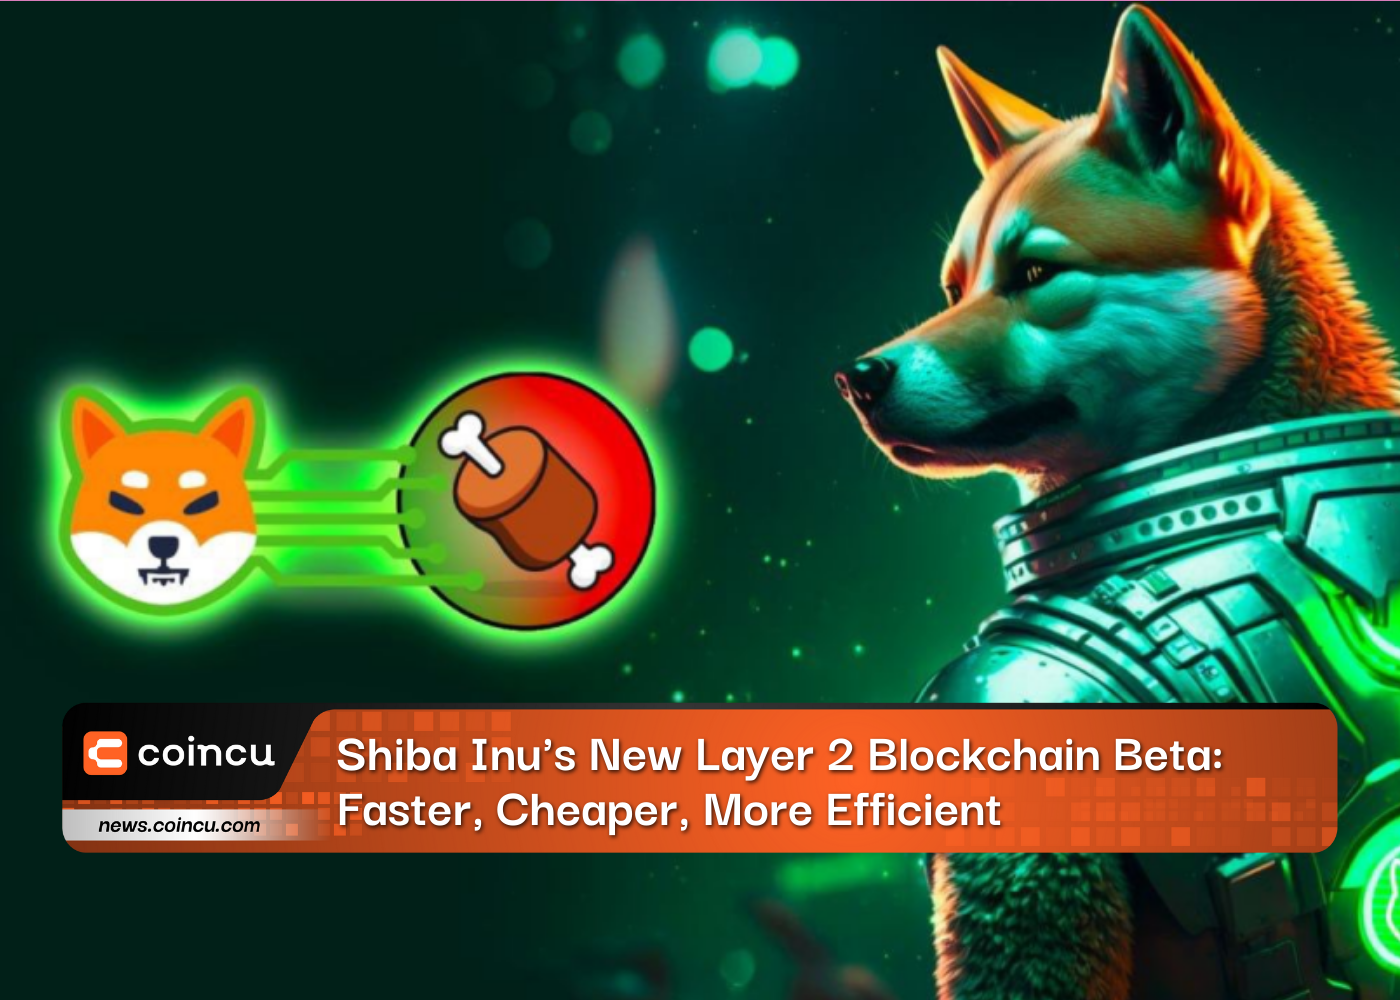 Shiba Inu's New Layer 2 Blockchain Beta: Faster, Cheaper, More Efficient